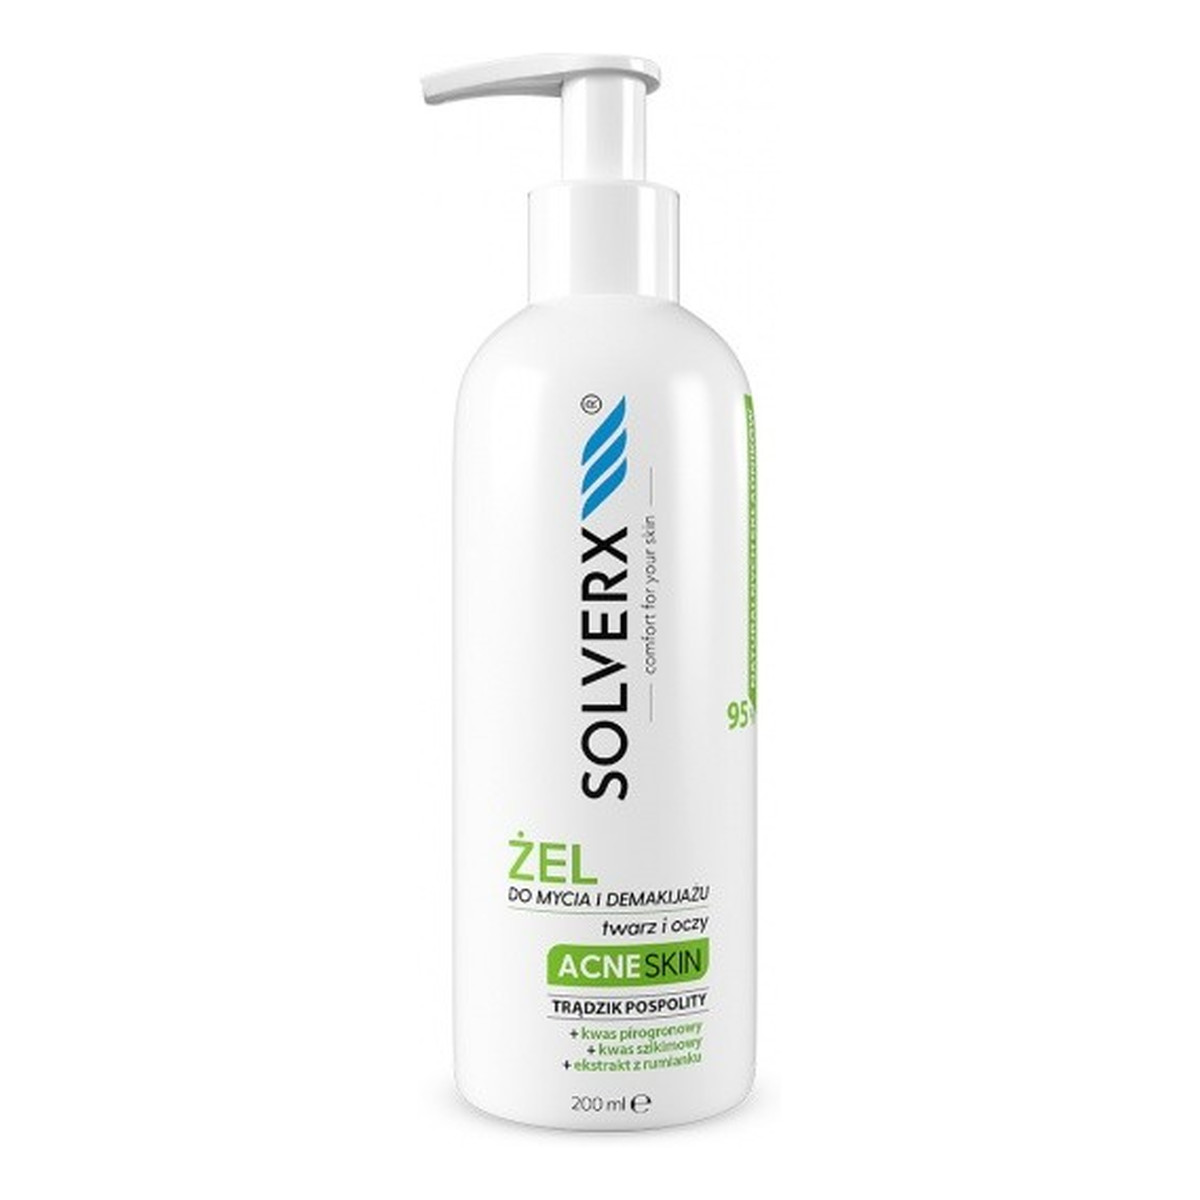 Solverx Acne Skin Żel do mycia i demakijażu twarzy i oczu - przeciwtrądzikowy 200ml